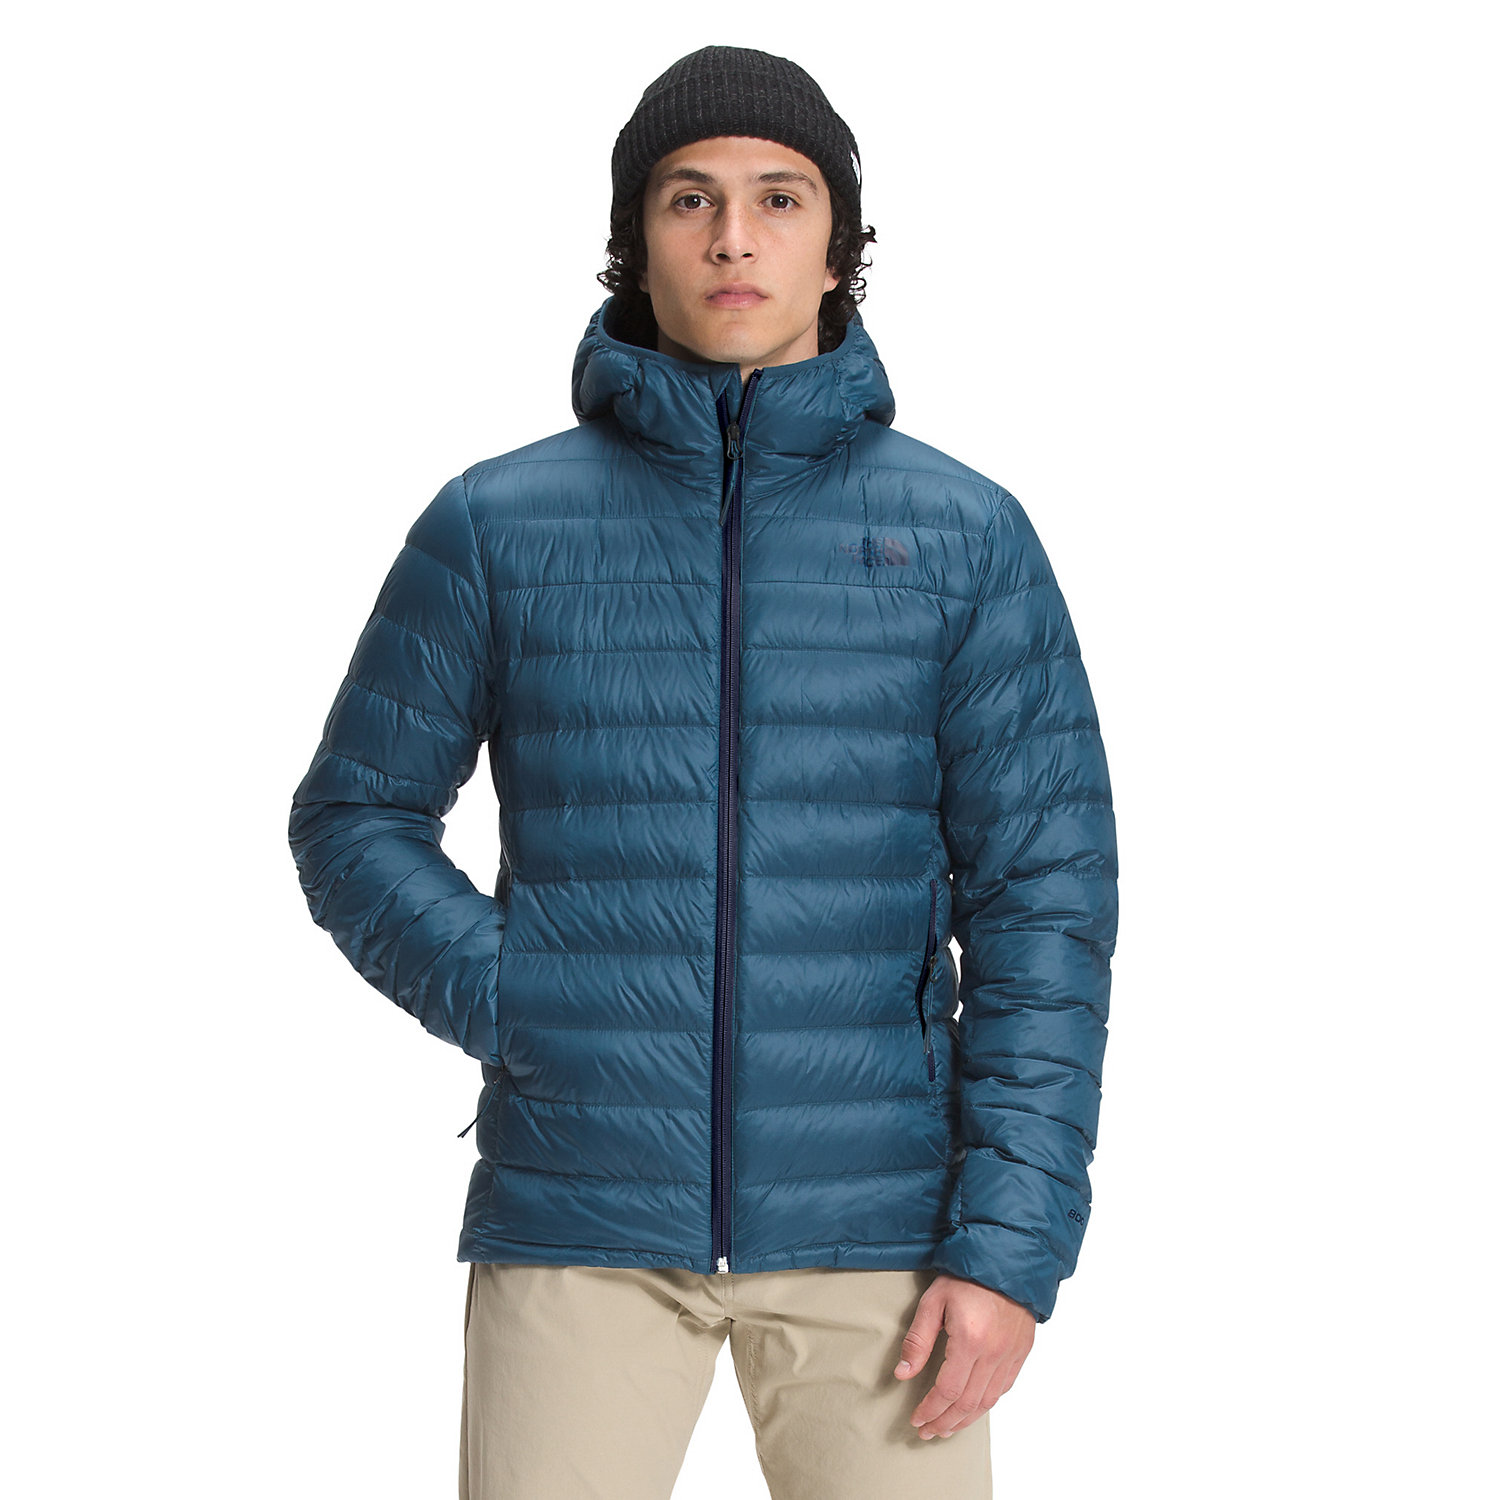 The North Face Mens Sierra Peak Hooded Jacket